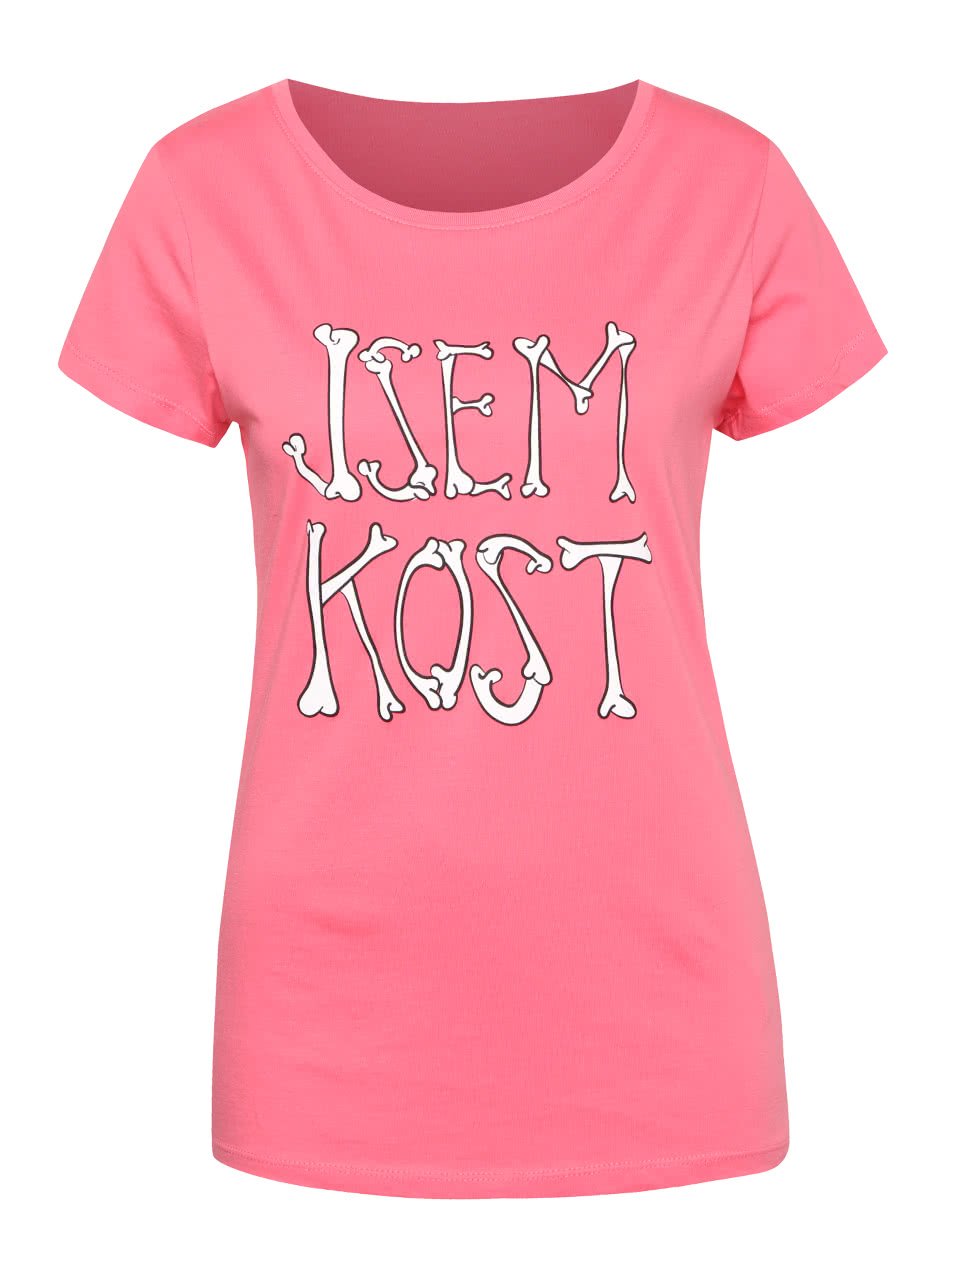 Růžové dámské tričko s nápisem ZOOT Originál Jsem kost